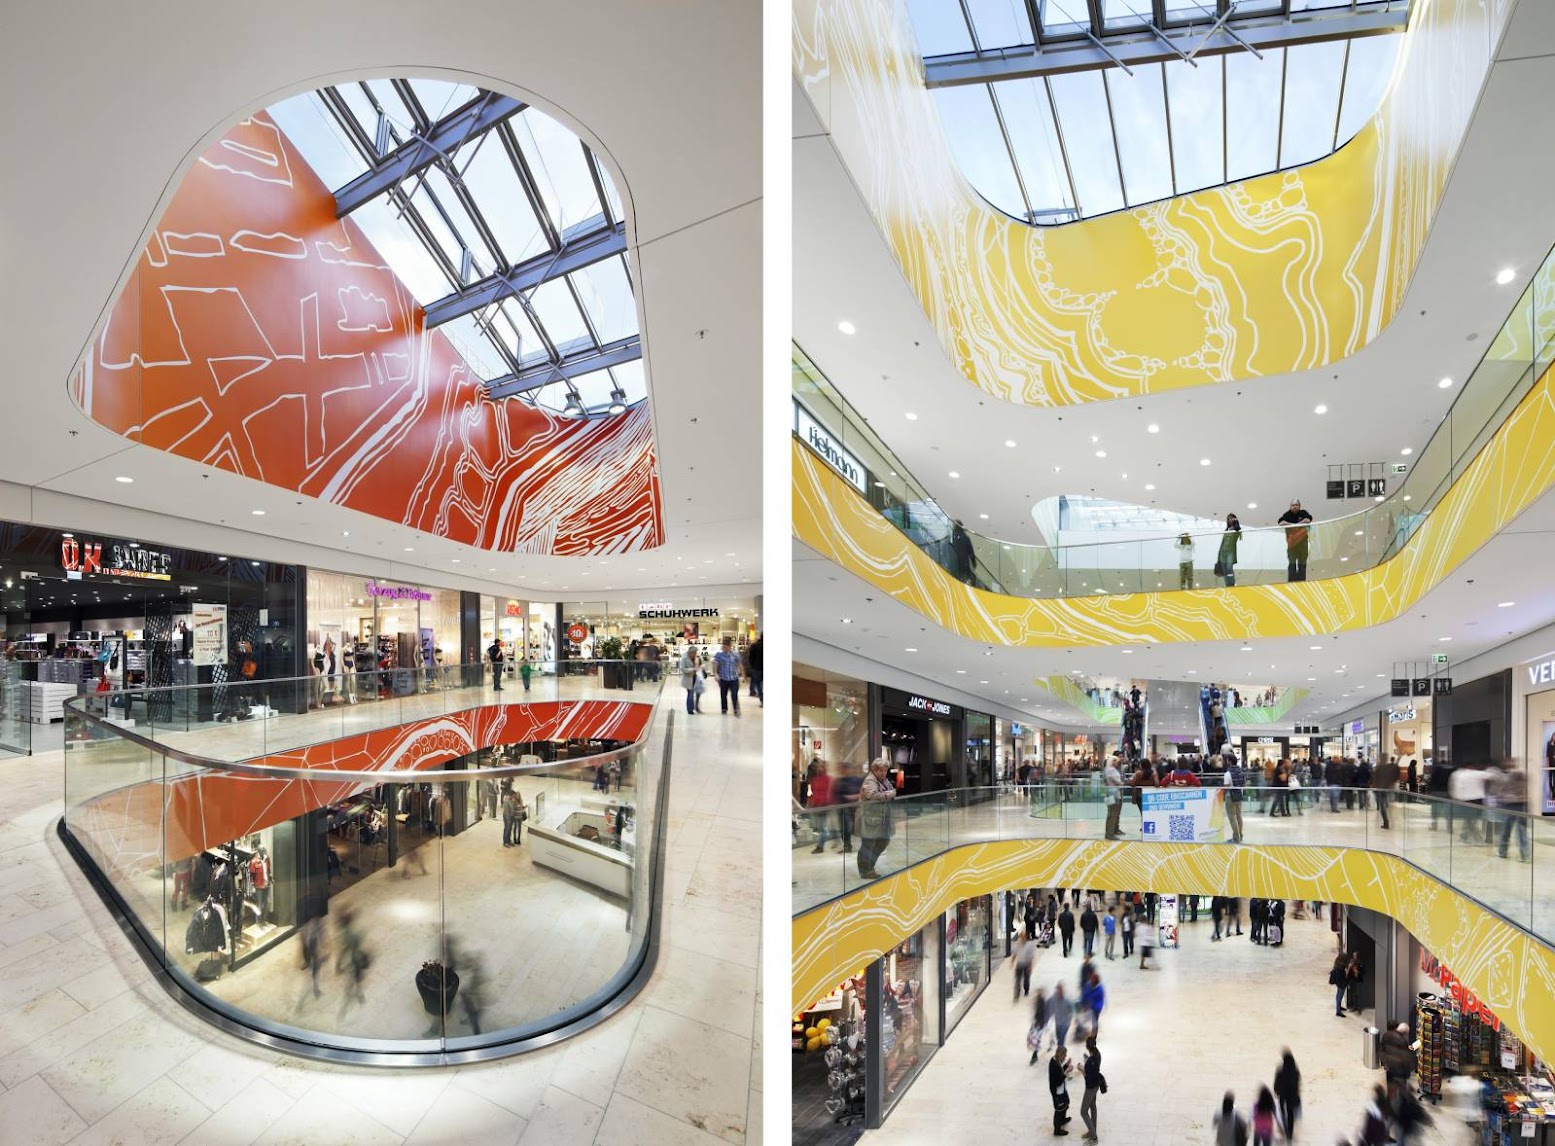 Mall Forum Mittelrhein by Benthem Crouwel Architects